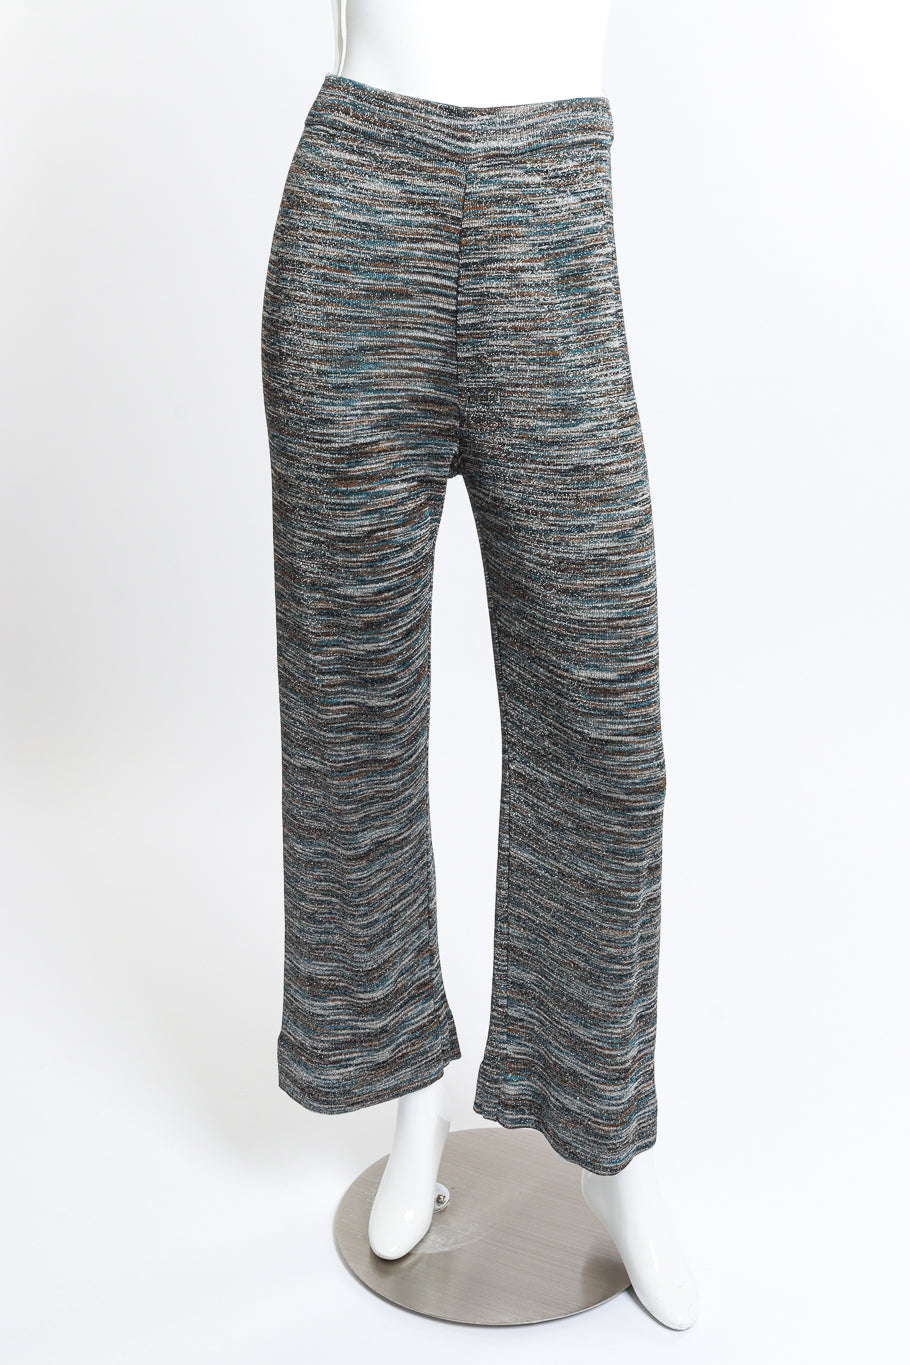 Striped Crop Top & Trouser Set trouser front on mannequin @RECESS LA